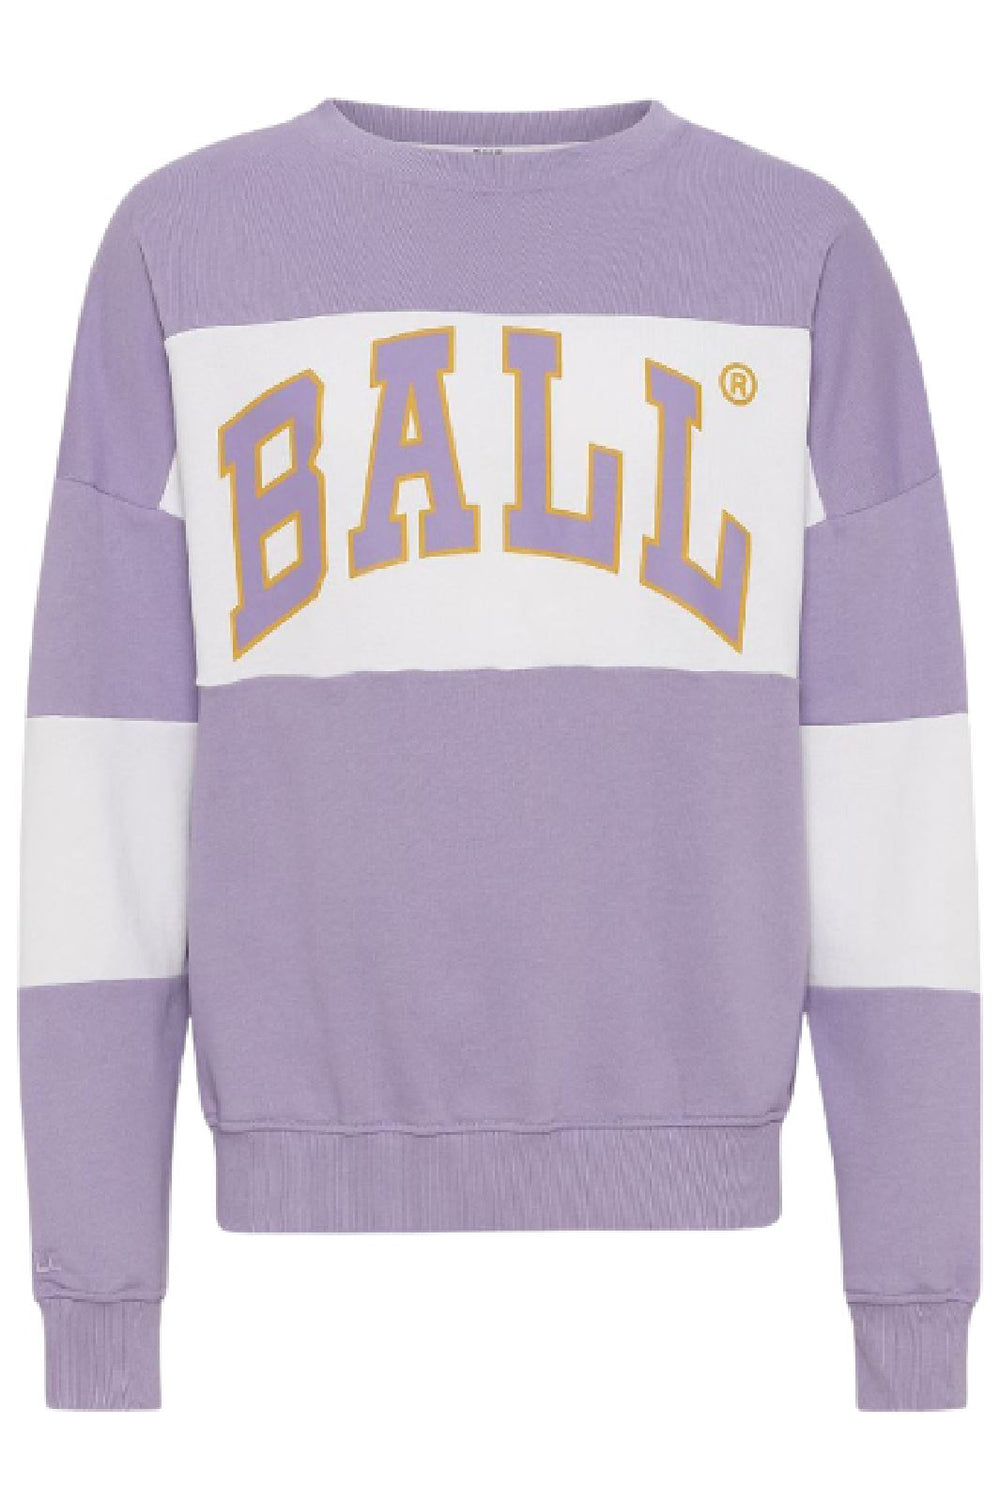 Ball - Sweatshirt J. Robinson - Lavender Sweatshirts 